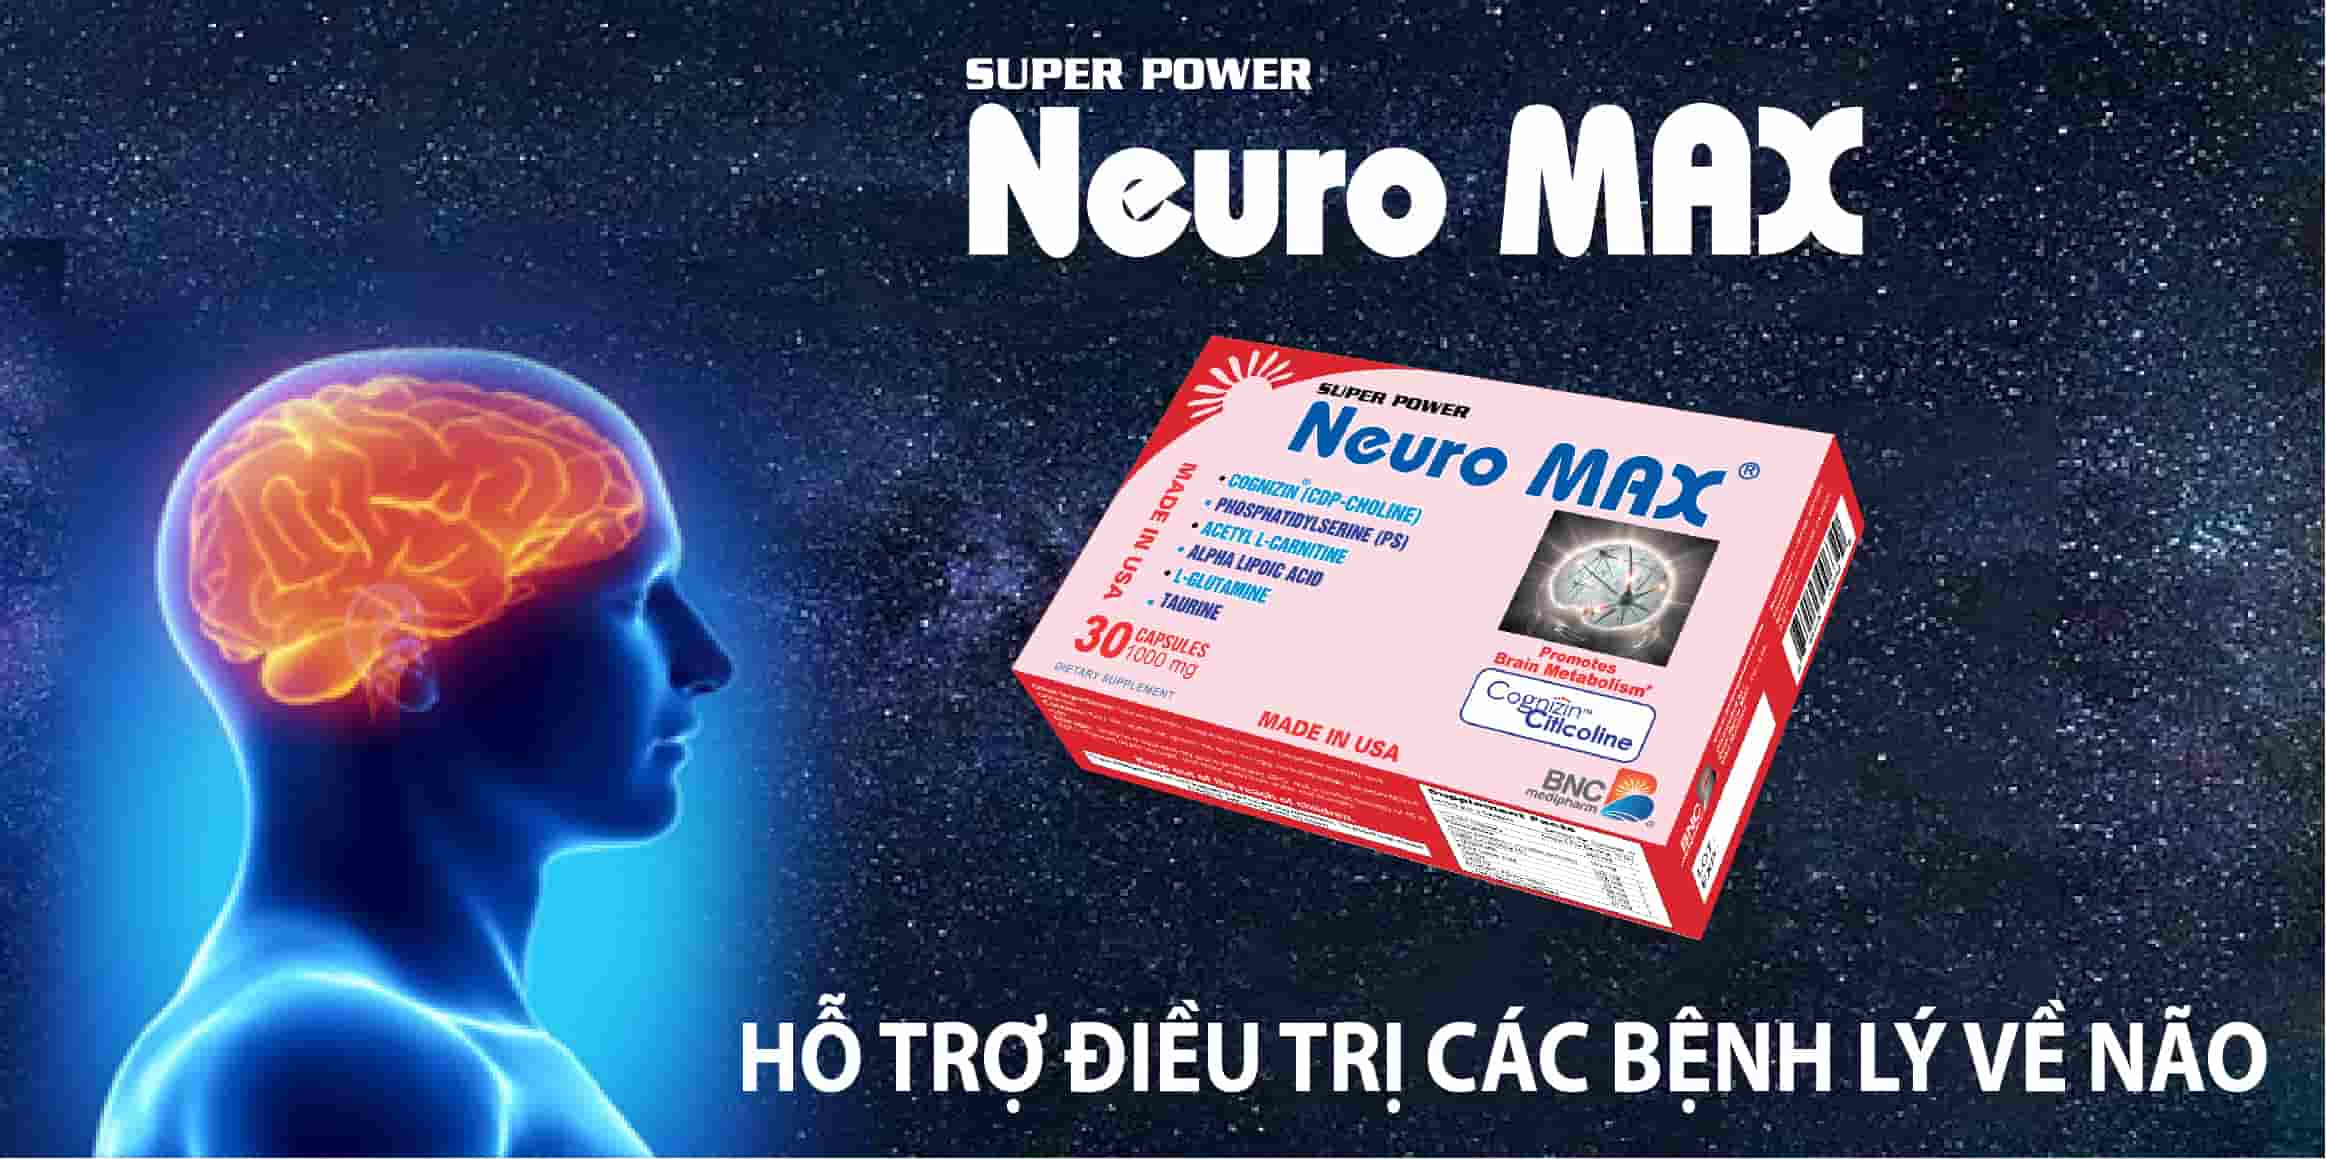 Super Power Neuro Max